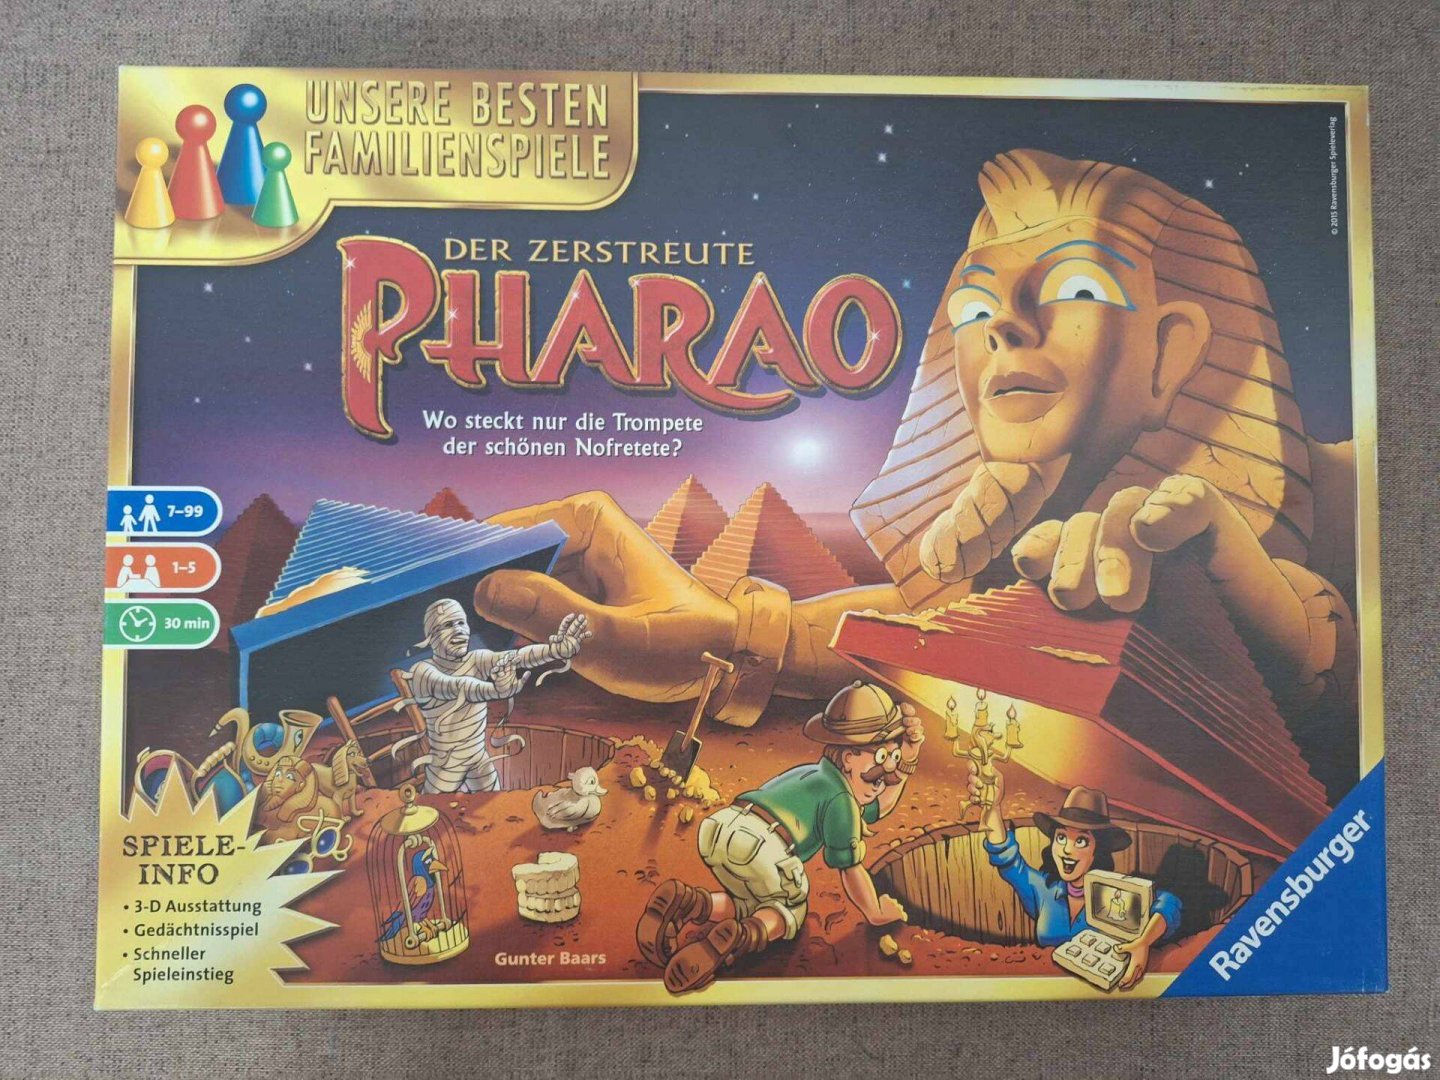 Der zerstreute Pharao társasjáték